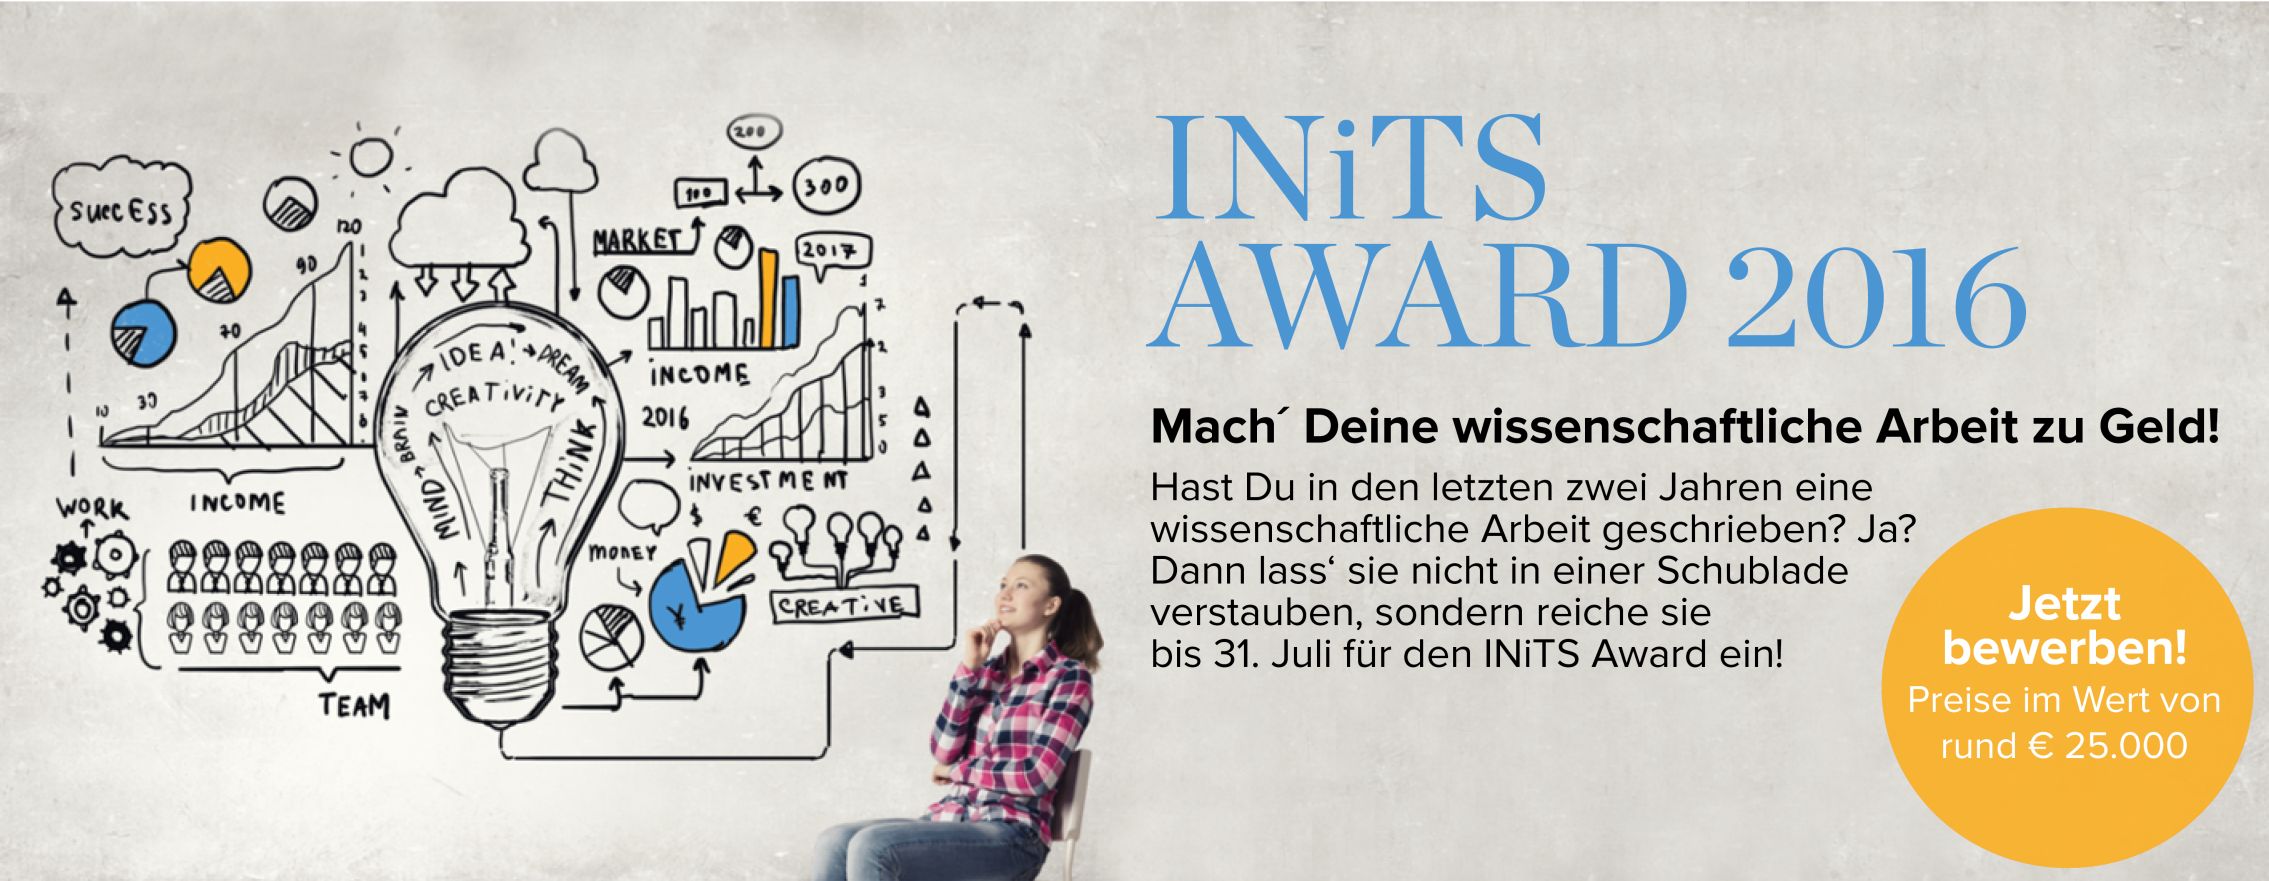 INiTS Award 2016 – jetzt bewerben!